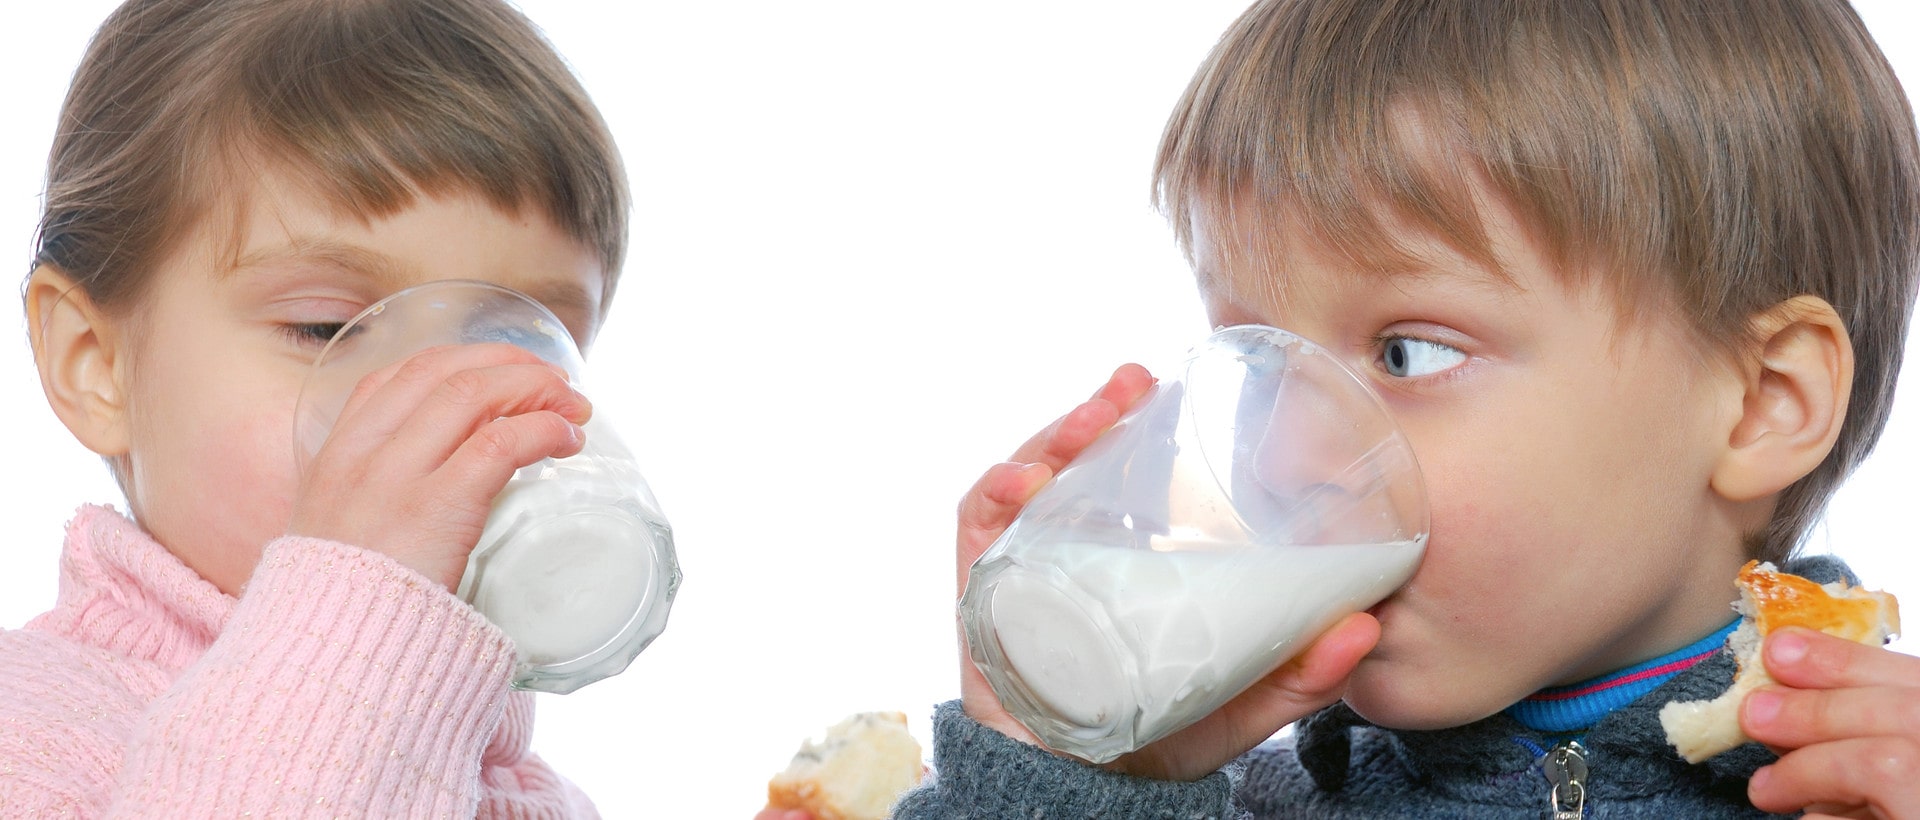 Mjölk fortfarande överlägset för barn - Dagens Samhälle